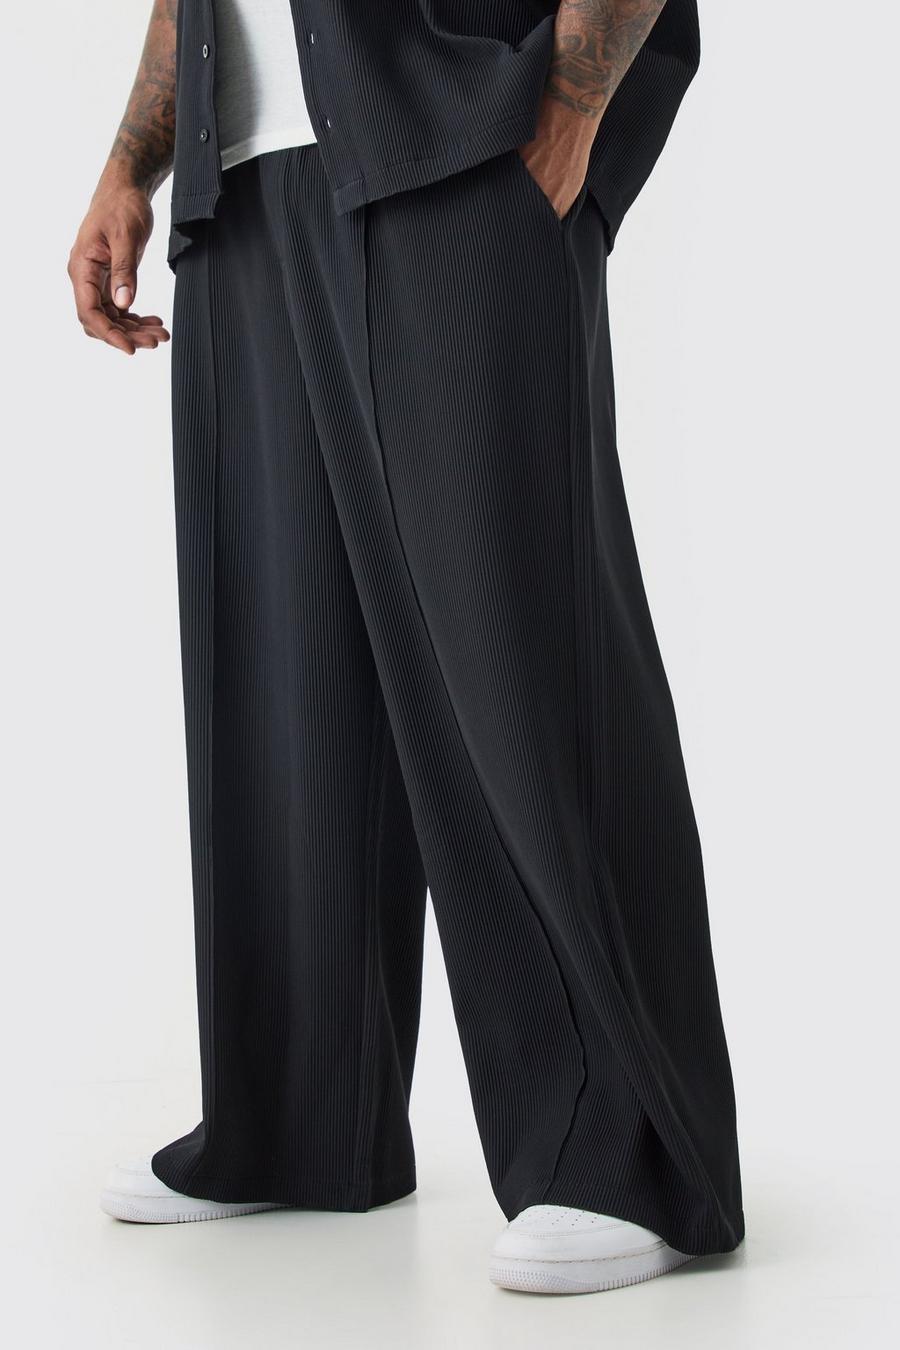 Pantalón Plus plisado de pernera ancha con cintura elástica y alforza, Black